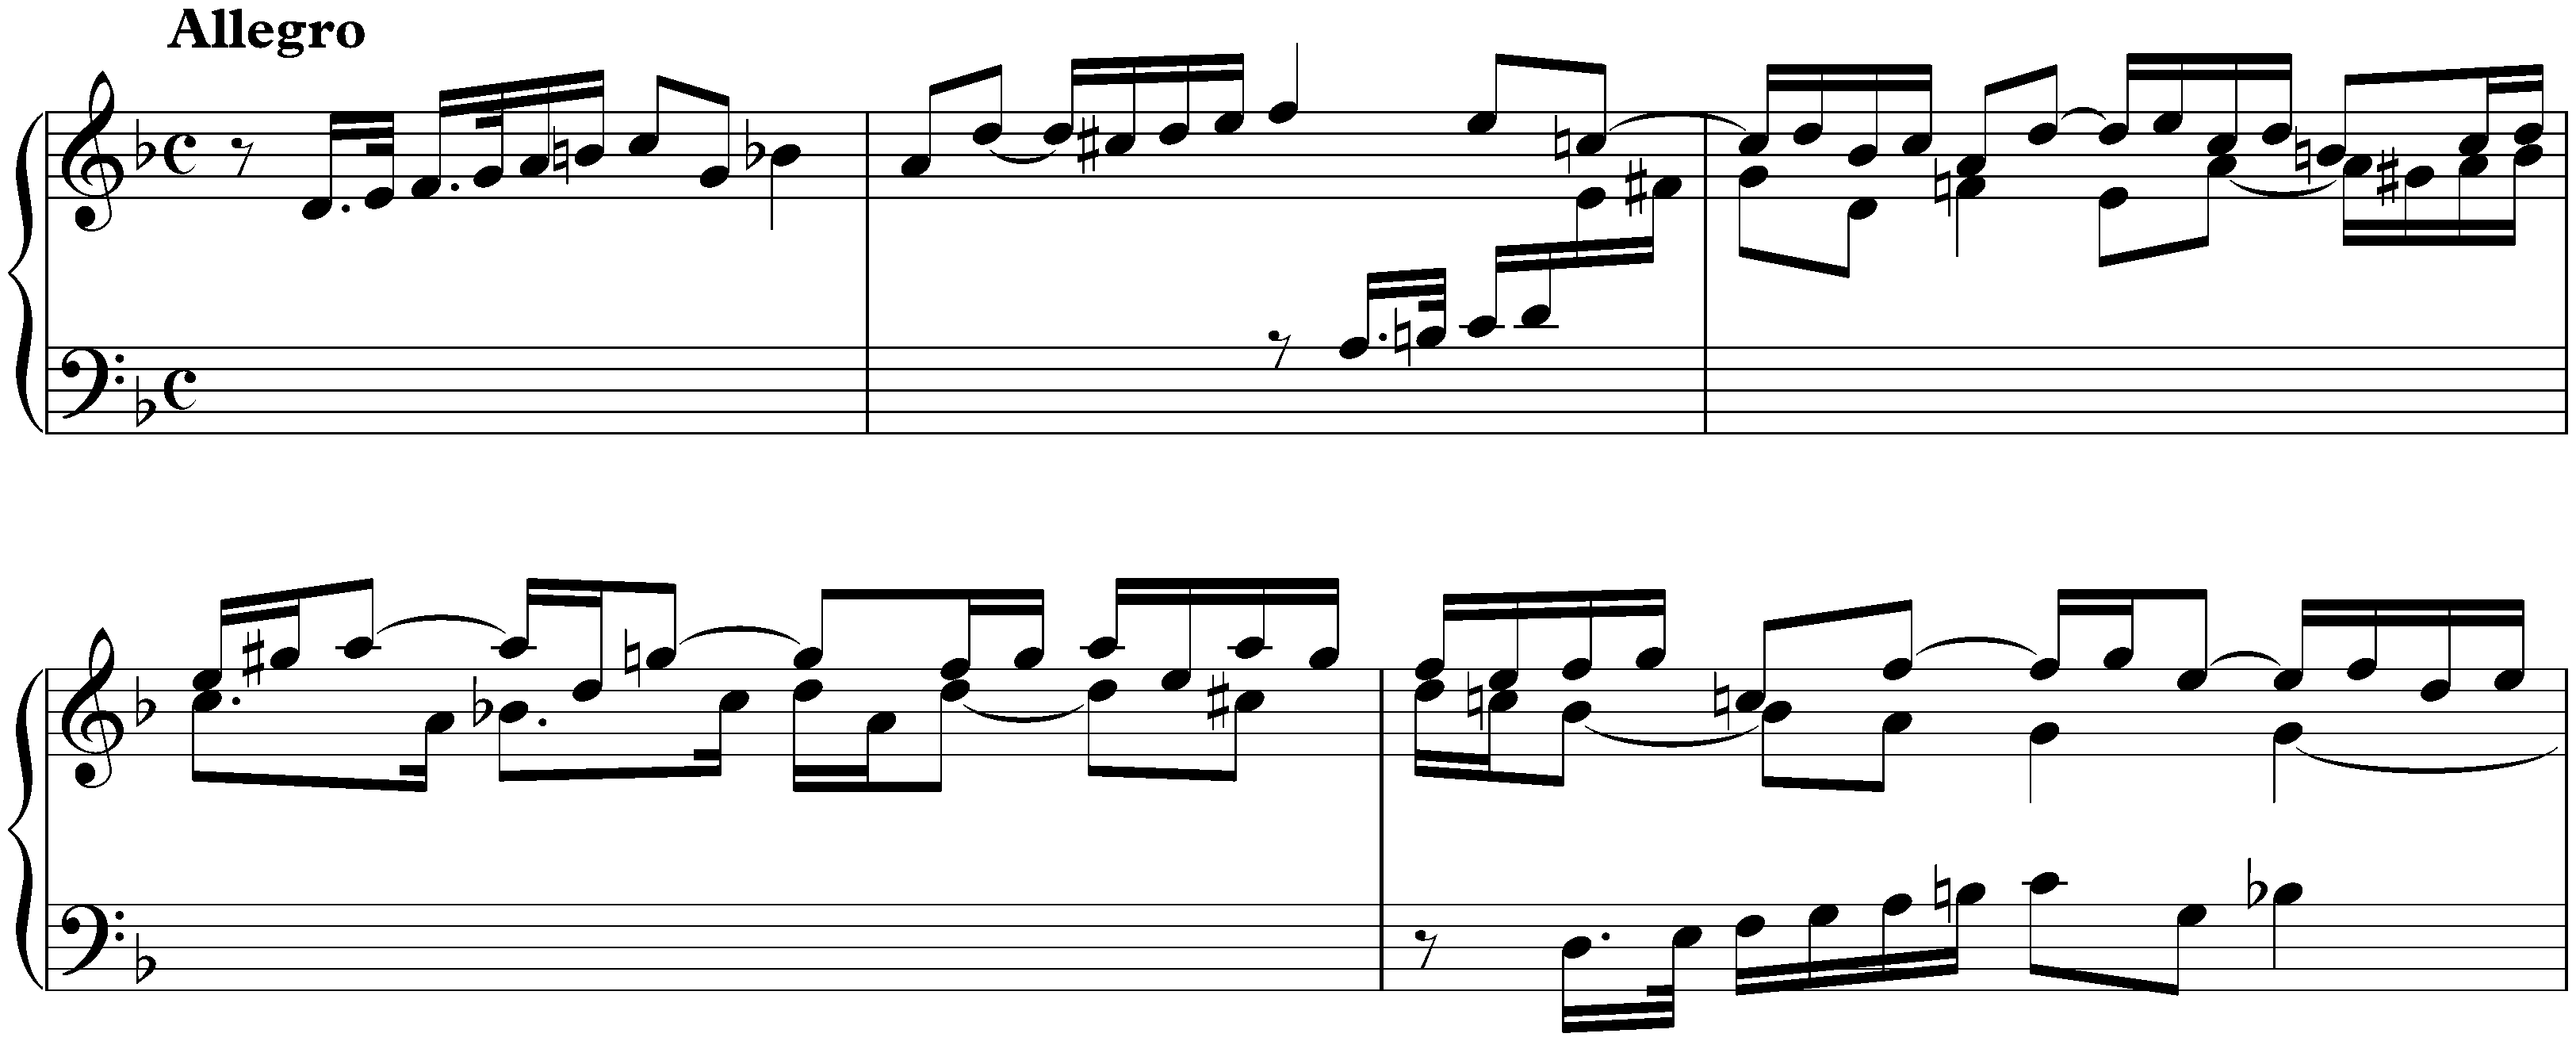 Suite in D minor, HWV 428; 2. Allegro